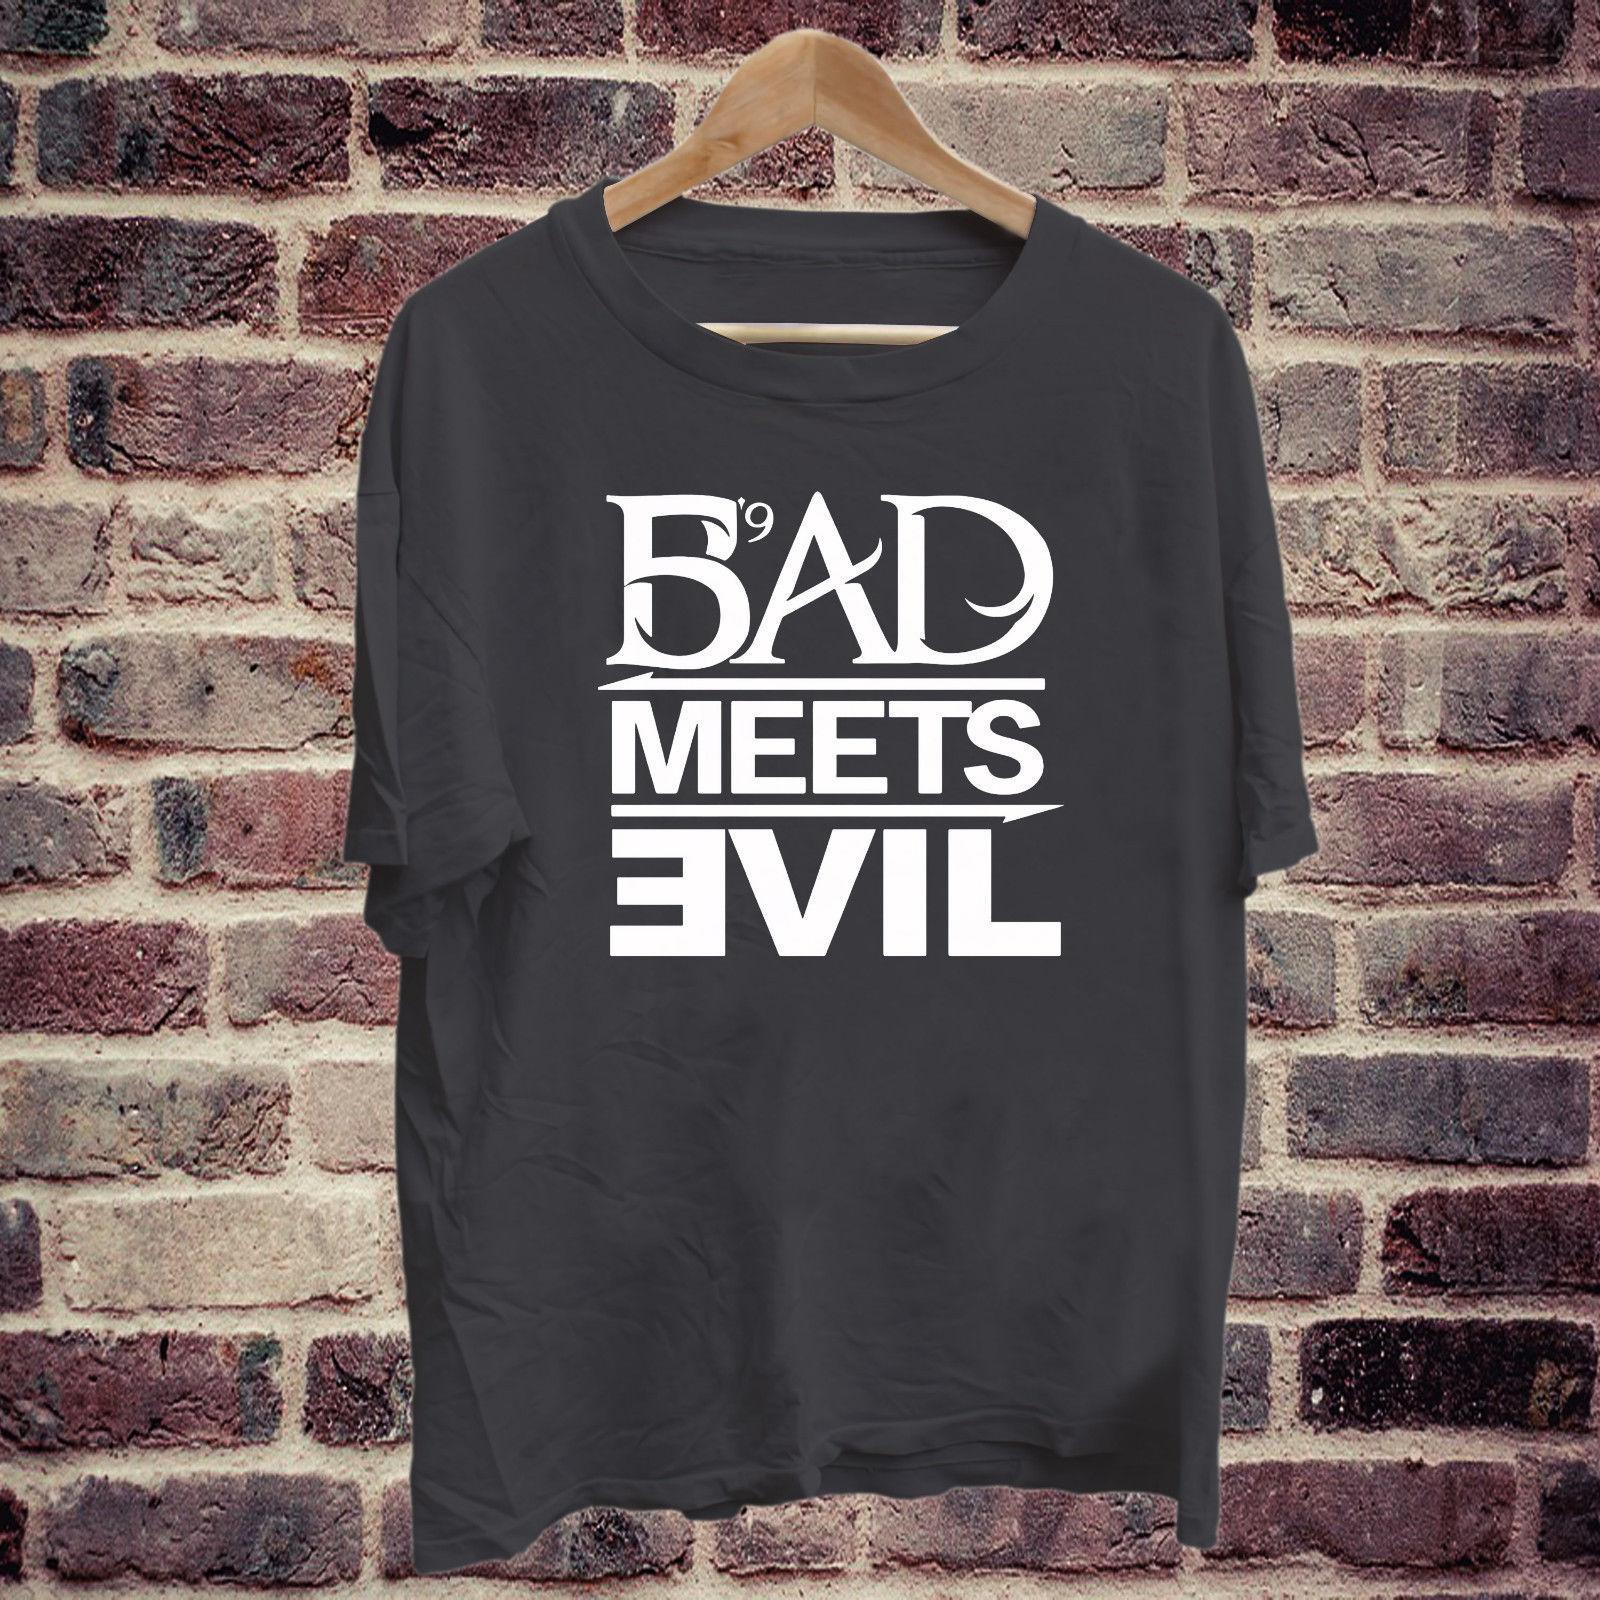 T-Shirt Square Logo - Eminem Bad Meets Evil Square Logo Black T Shirt Tee S 2XL Short